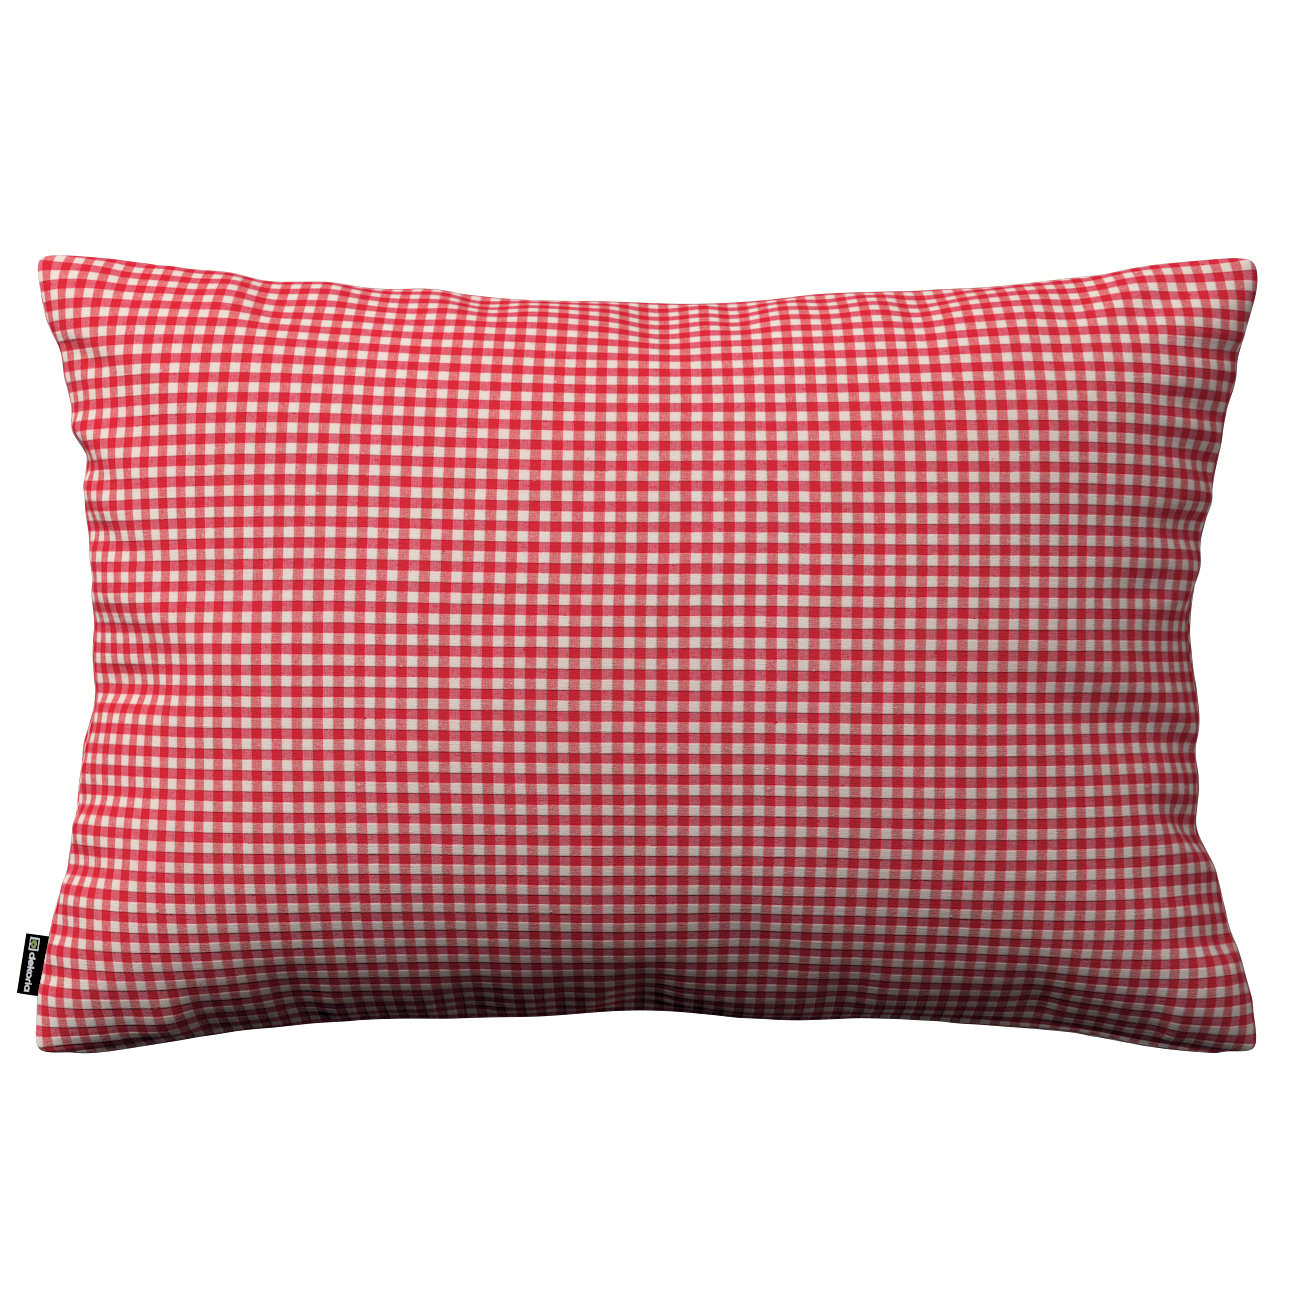 Dekoria Karin - jednoduchá obliečka, 60x40cm, červeno-biele malé káro, 60 x 40 cm, Quadro, 136-15